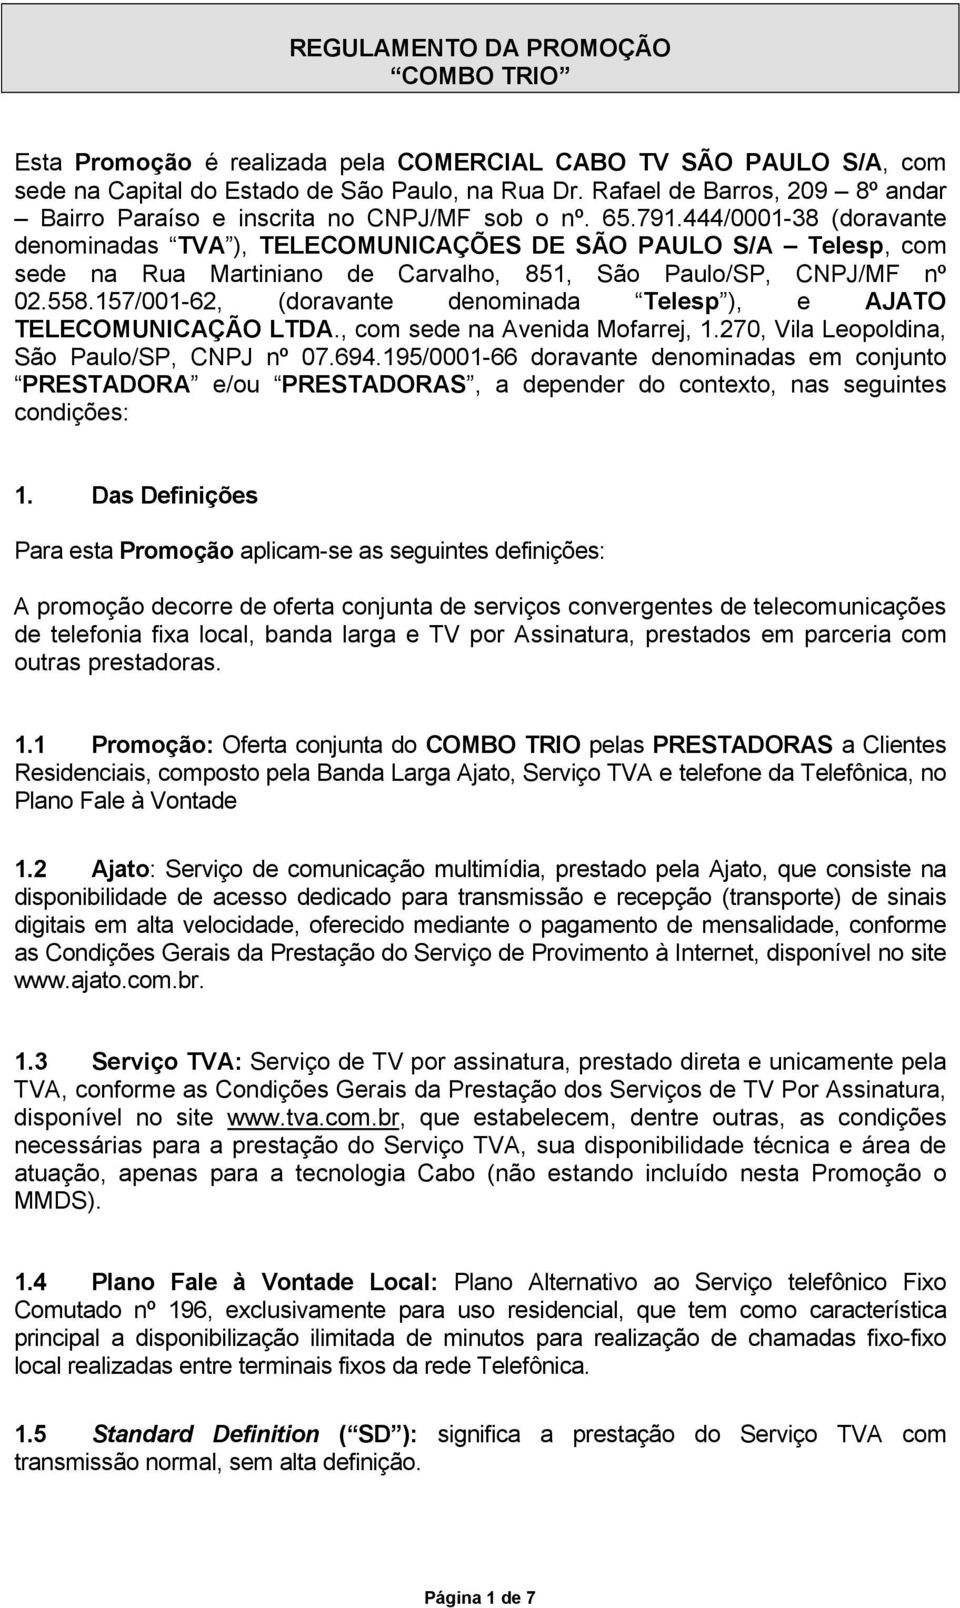 444/0001-38 (doravante denominadas TVA ), TELECOMUNICAÇÕES DE SÃO PAULO S/A Telesp, com sede na Rua Martiniano de Carvalho, 851, São Paulo/SP, CNPJ/MF nº 02.558.